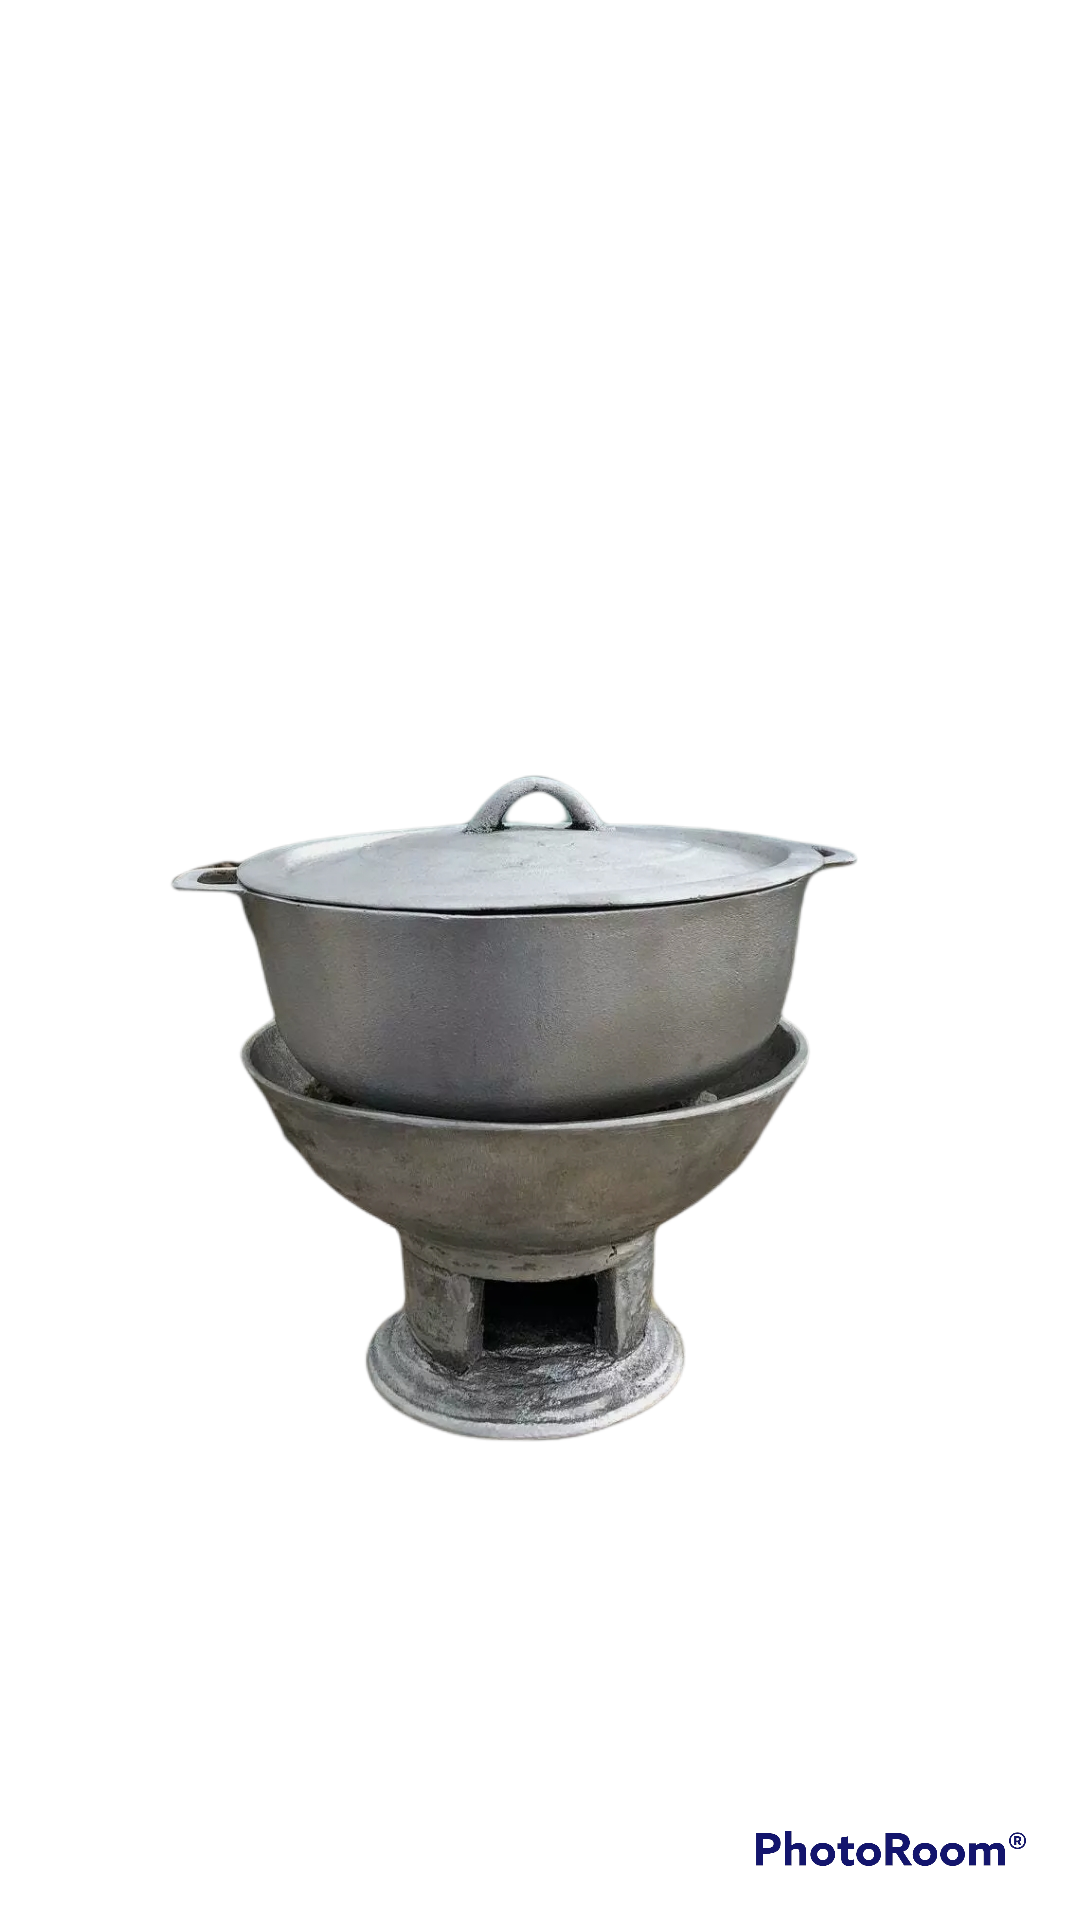 Jamaican Coal Stove(coal pot)  1x33.5cm